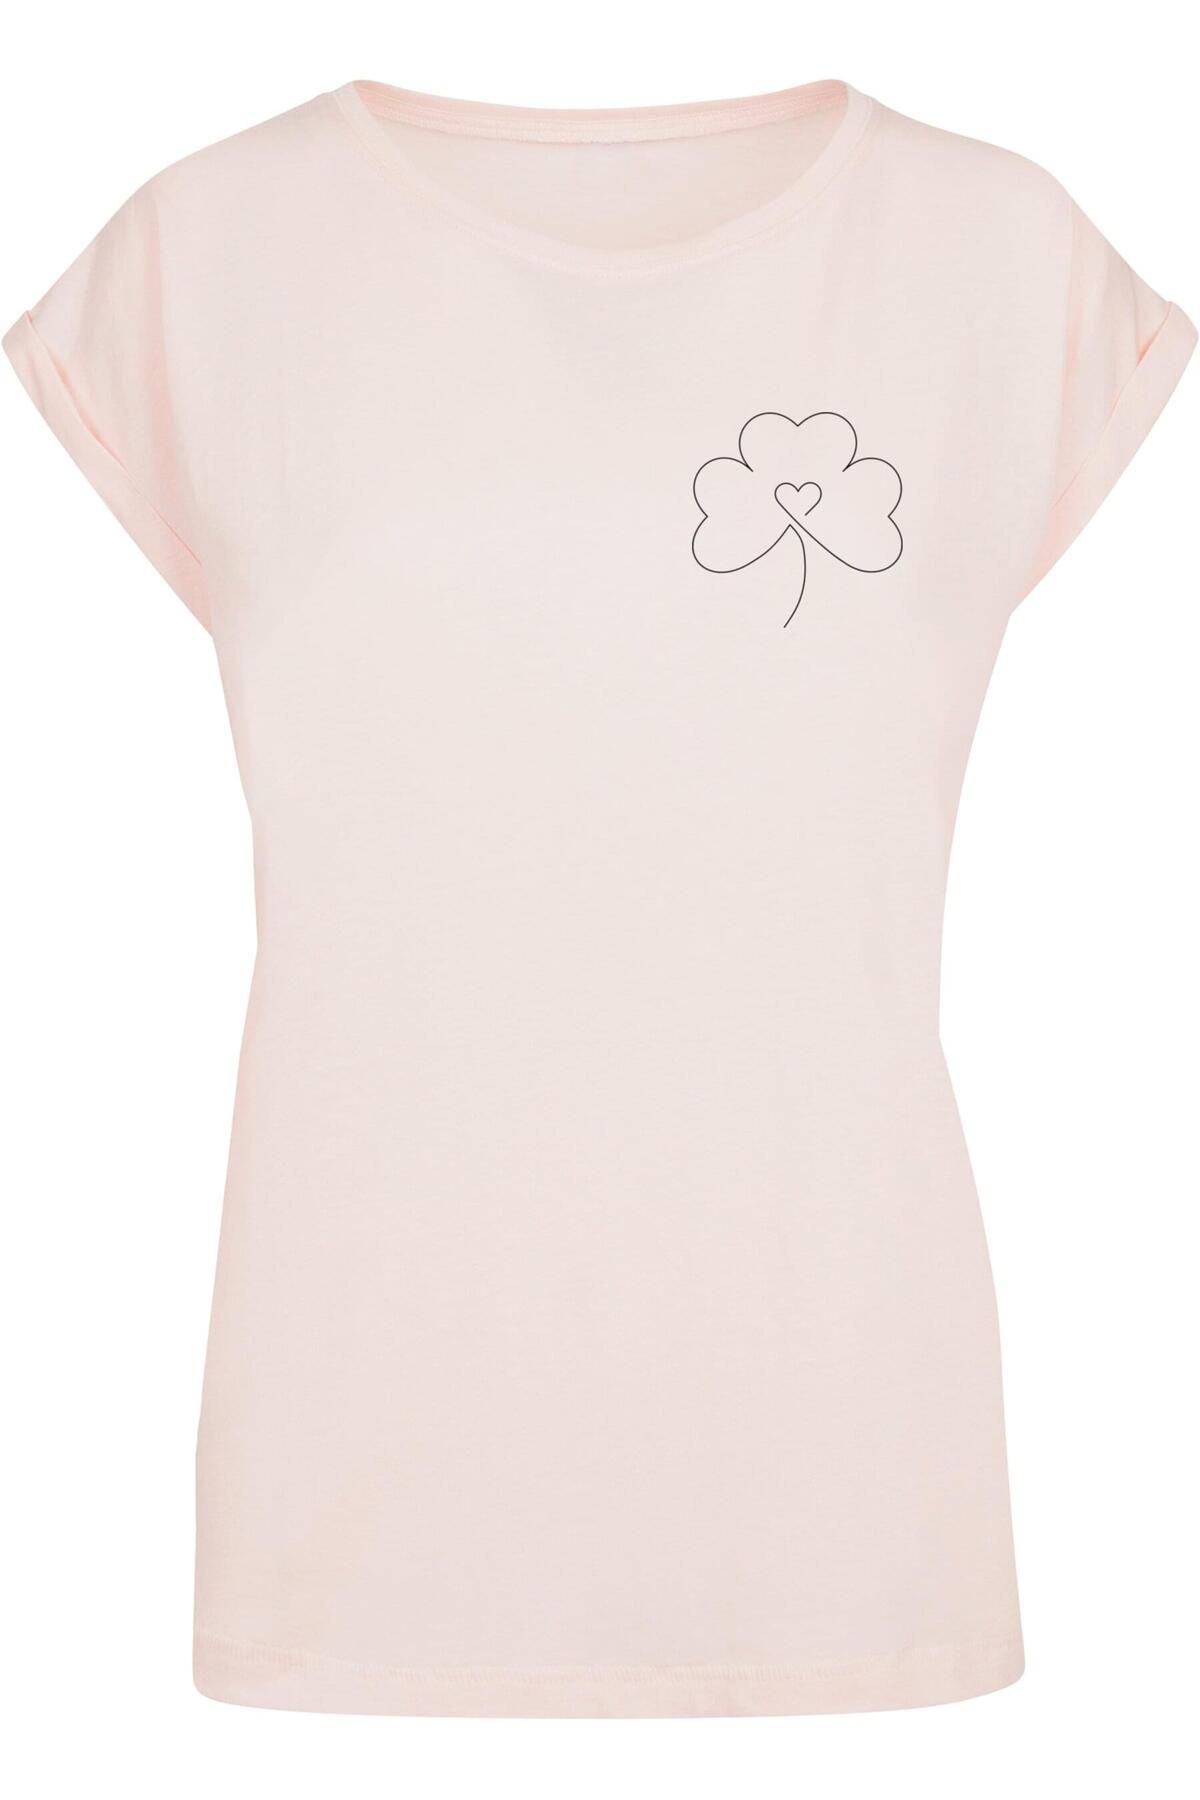 T-Shirt Ladies Trendyol Flower - Damen Spring Merchcode - Clover Leaf